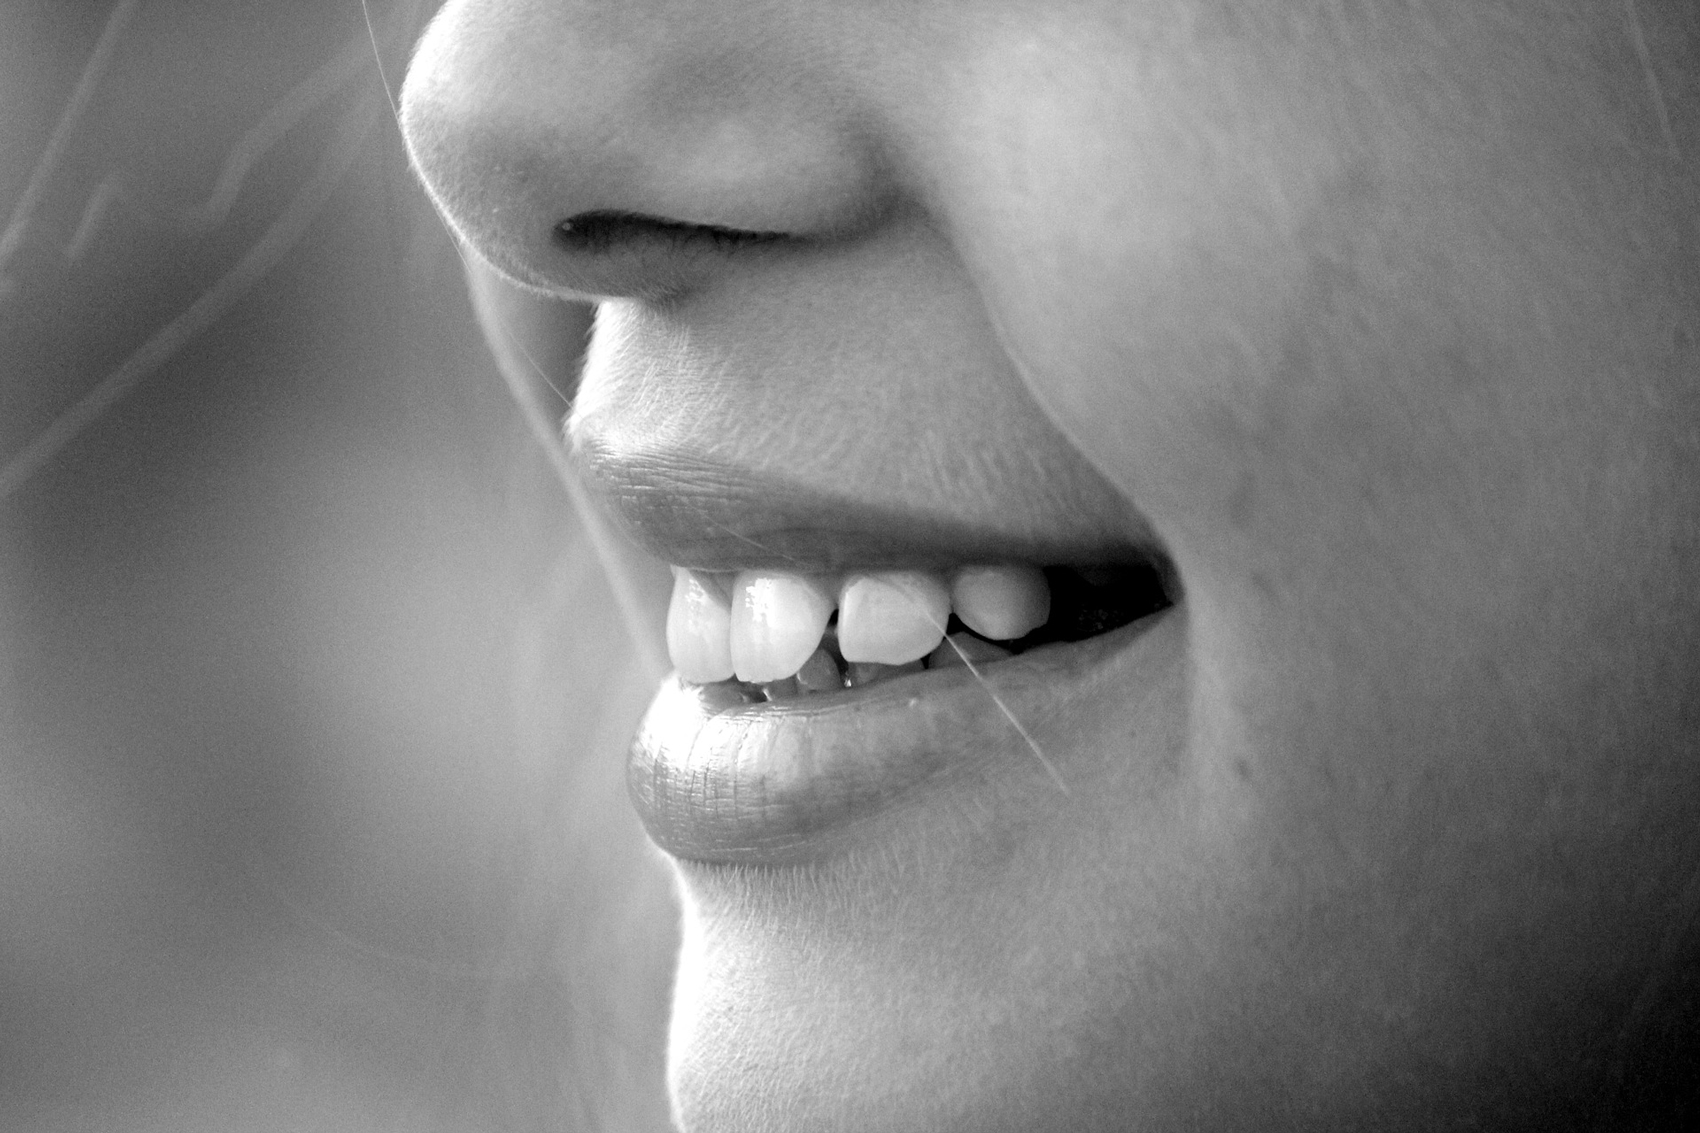 PsychologInnen erforschen den Zusammenhang zwischen den Folgen einer Veränderung oder dem Verlust des Geruchssinns. Foto: Pixabay.com 